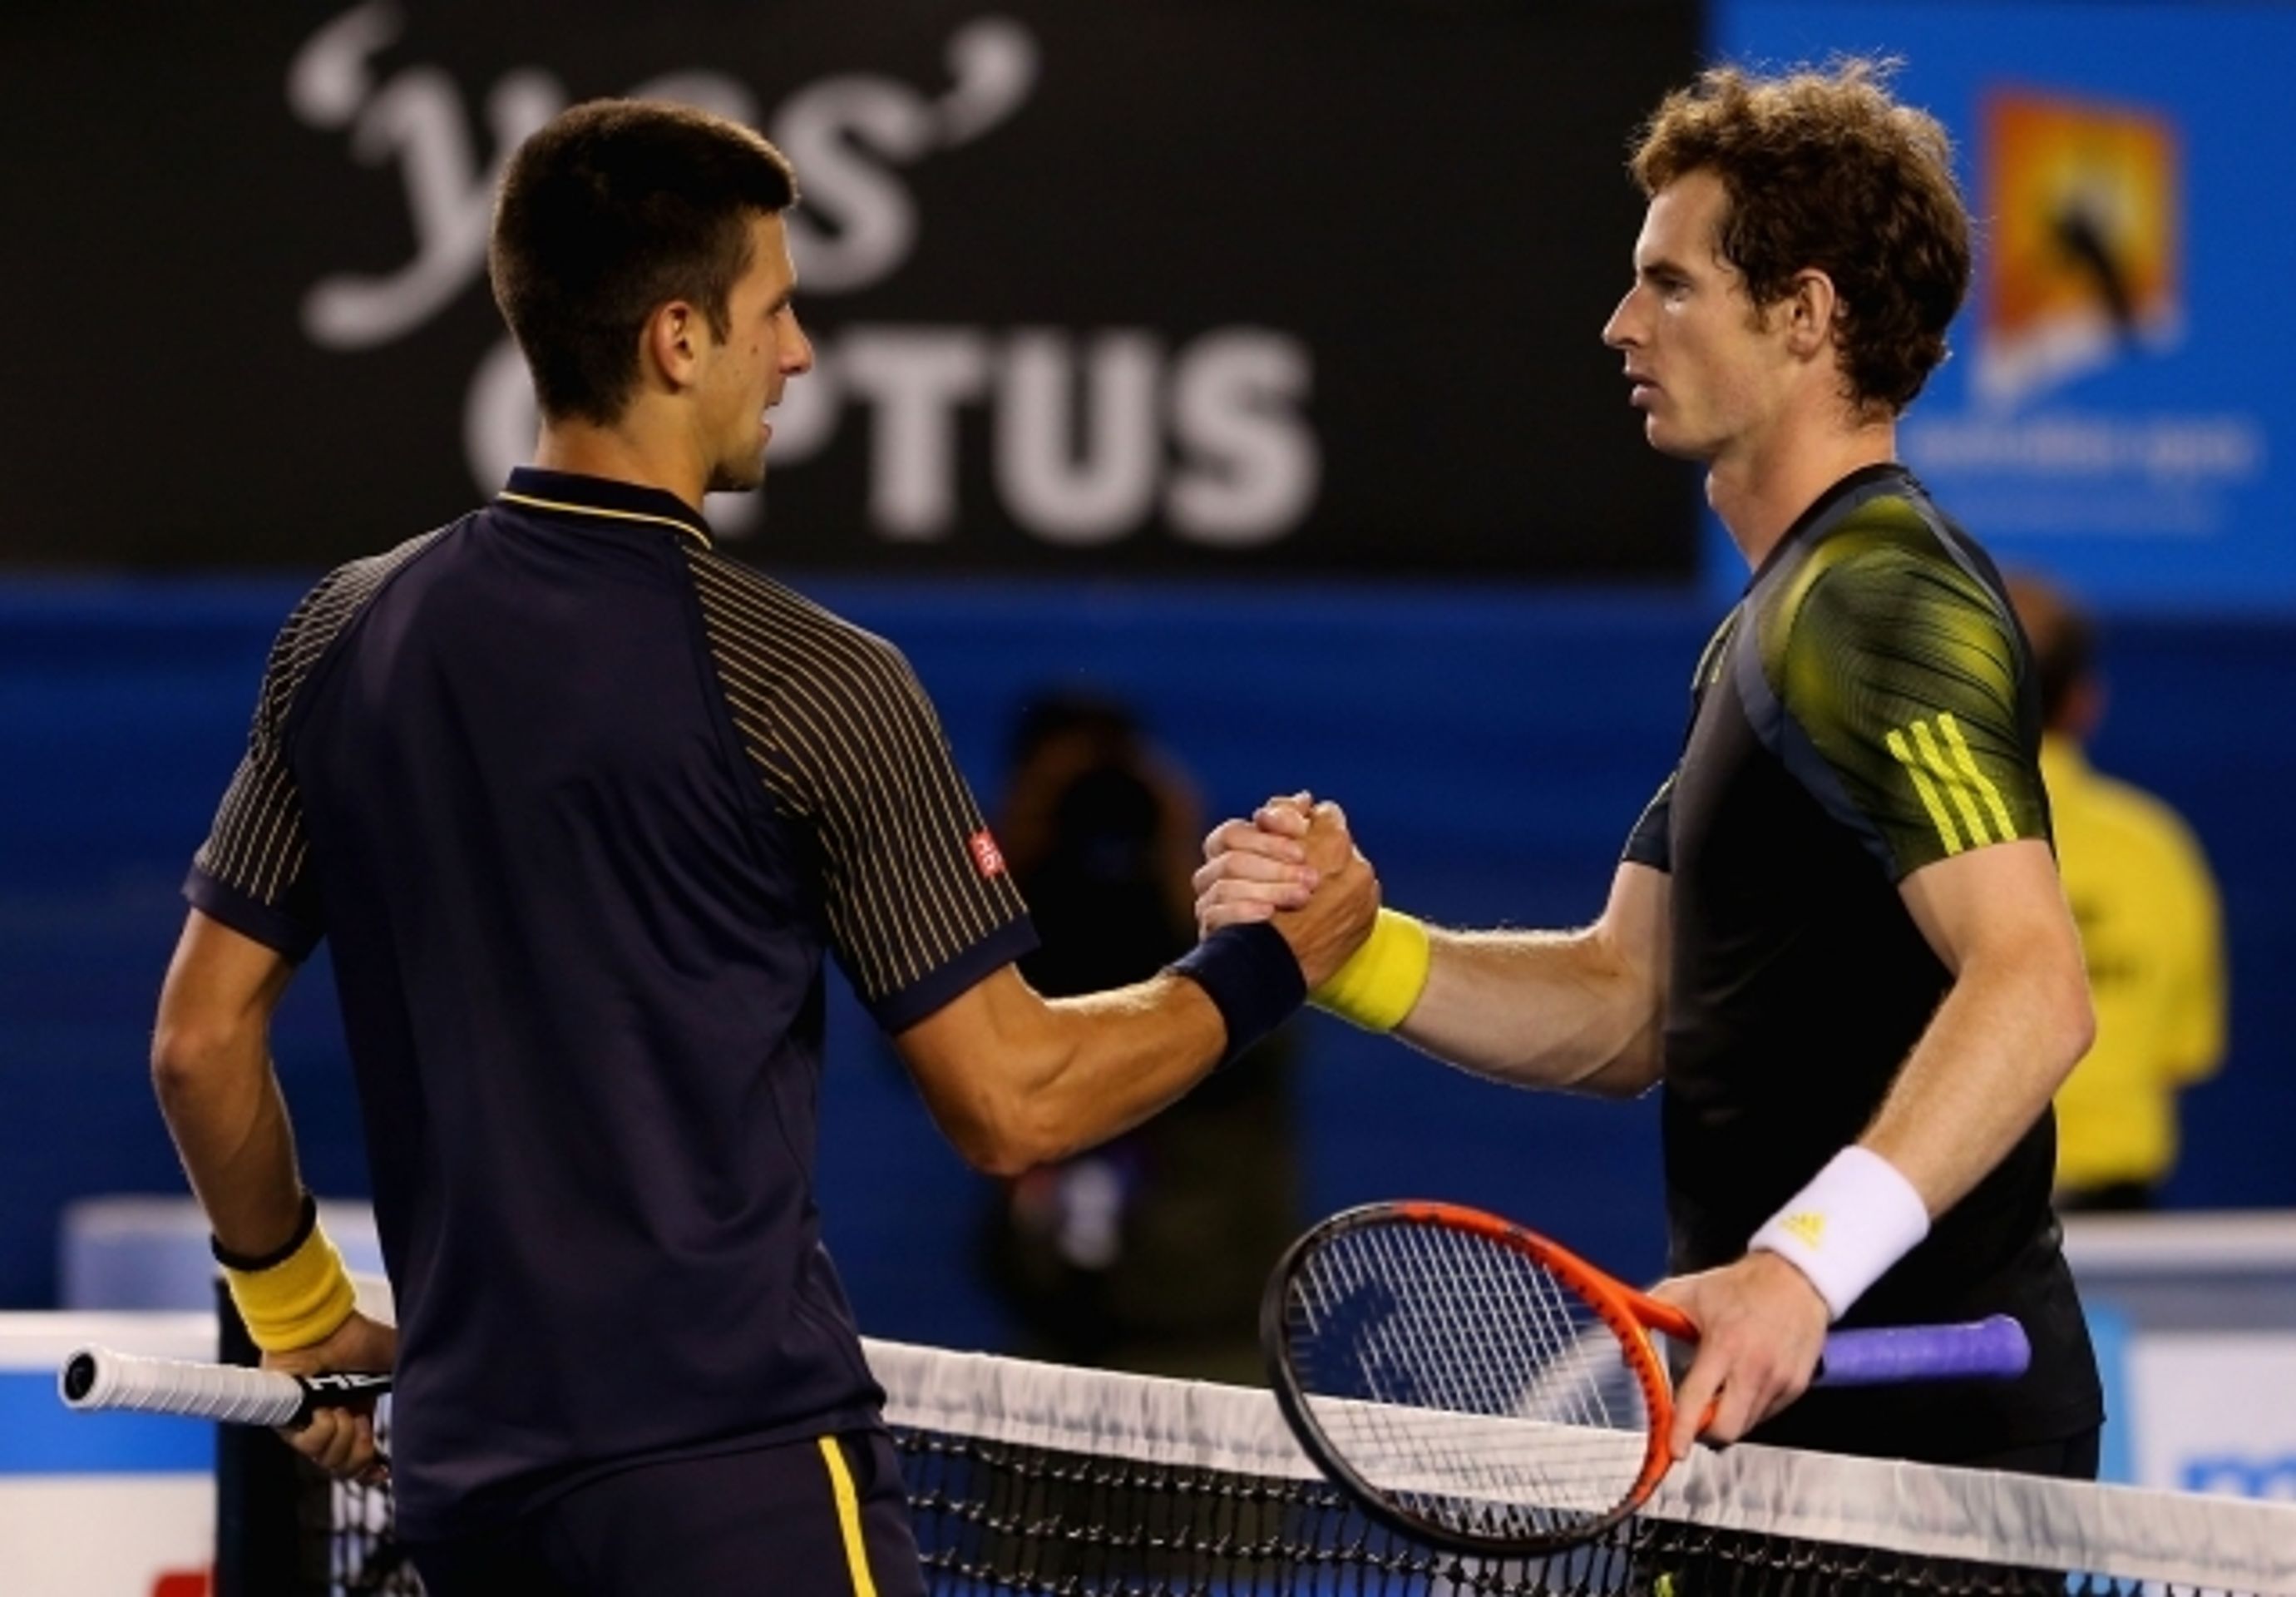 Novak Djokovič vyhrál potřetí v řadě Australian Open - 1 - GALERIE: Djokovič potřetí v řadě triumfuje na Australian Open (5/9)